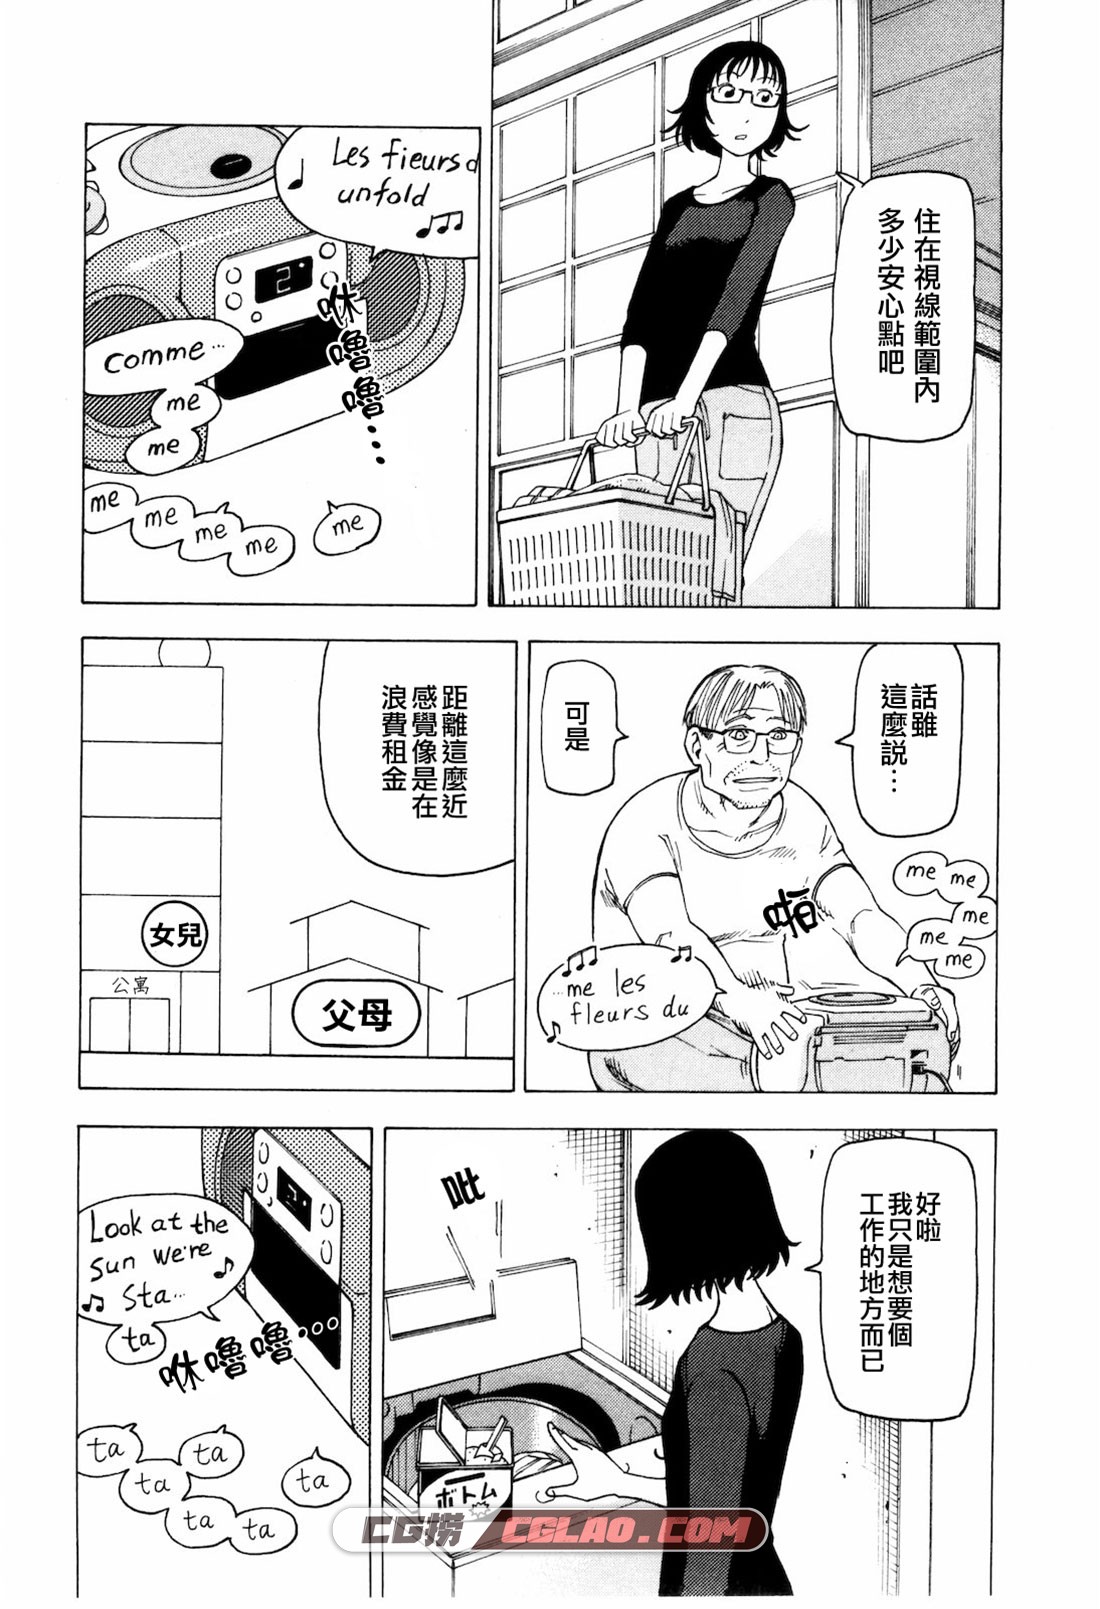 响子和爸爸 石黑正数 全一册完结 日本亲情漫画网盘下载,kyoko_009.jpg